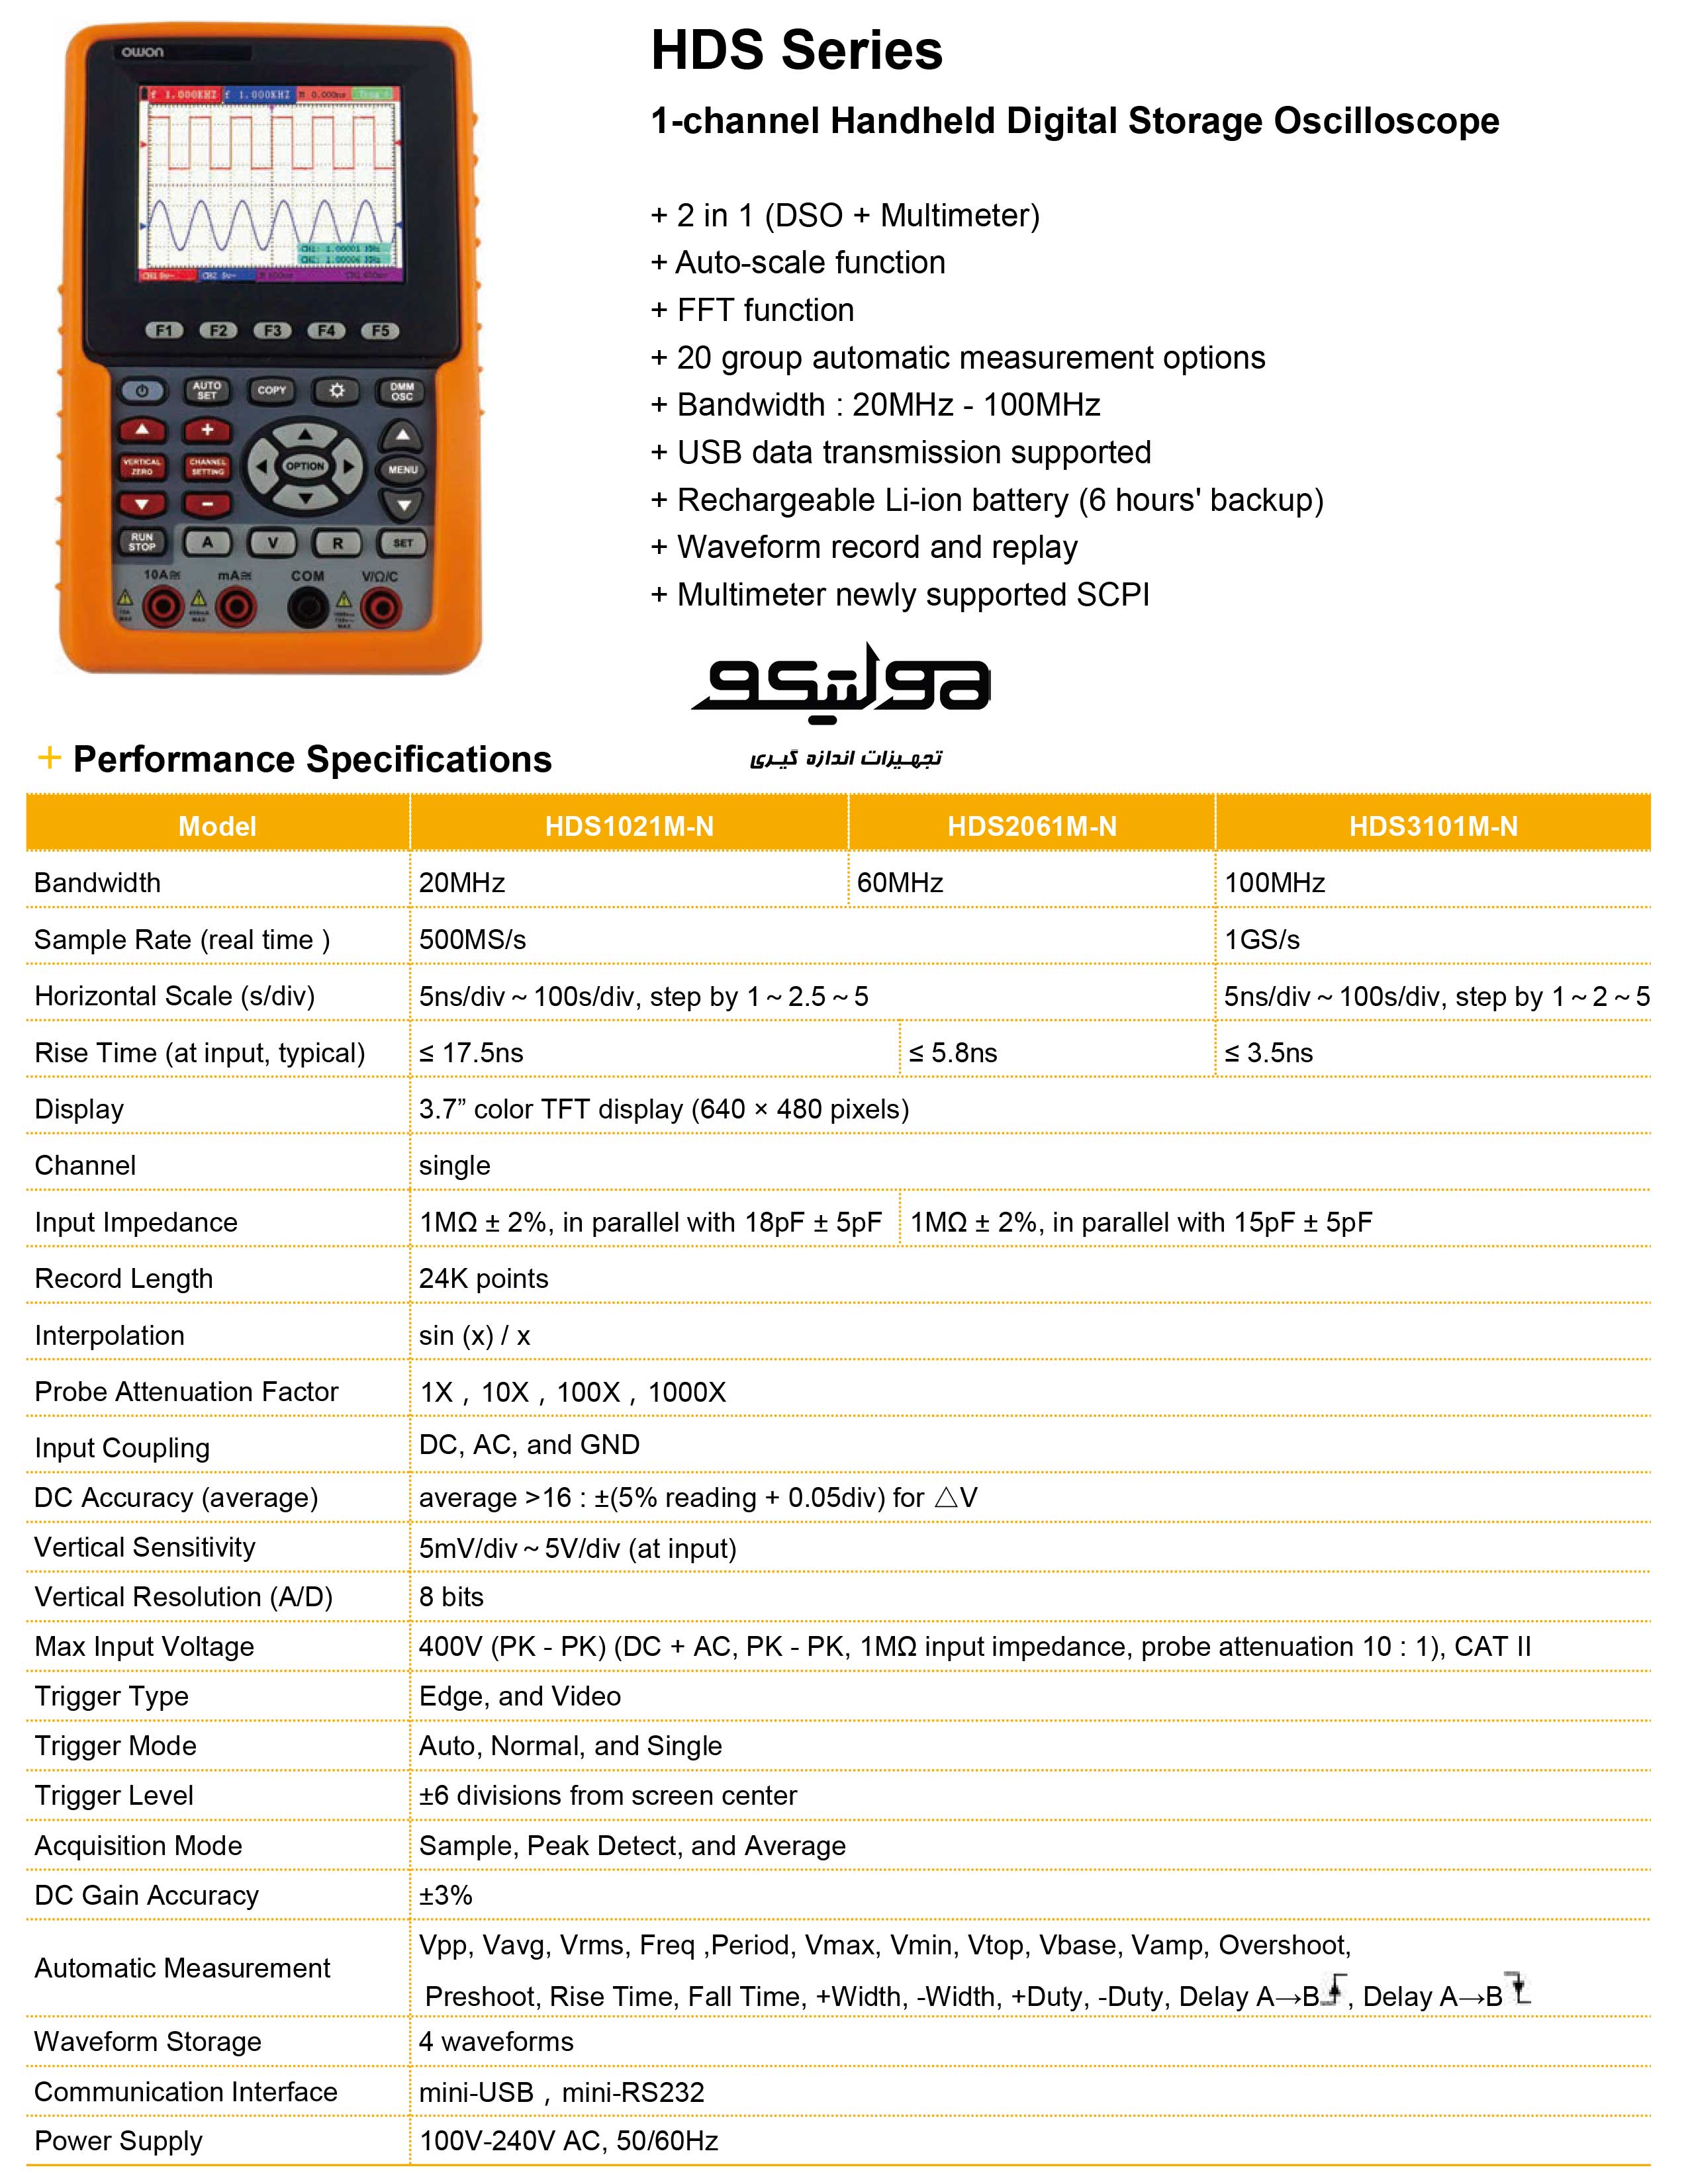 قیمت اسیلوسکوپ + مولتیمتر HDS-3101M-N